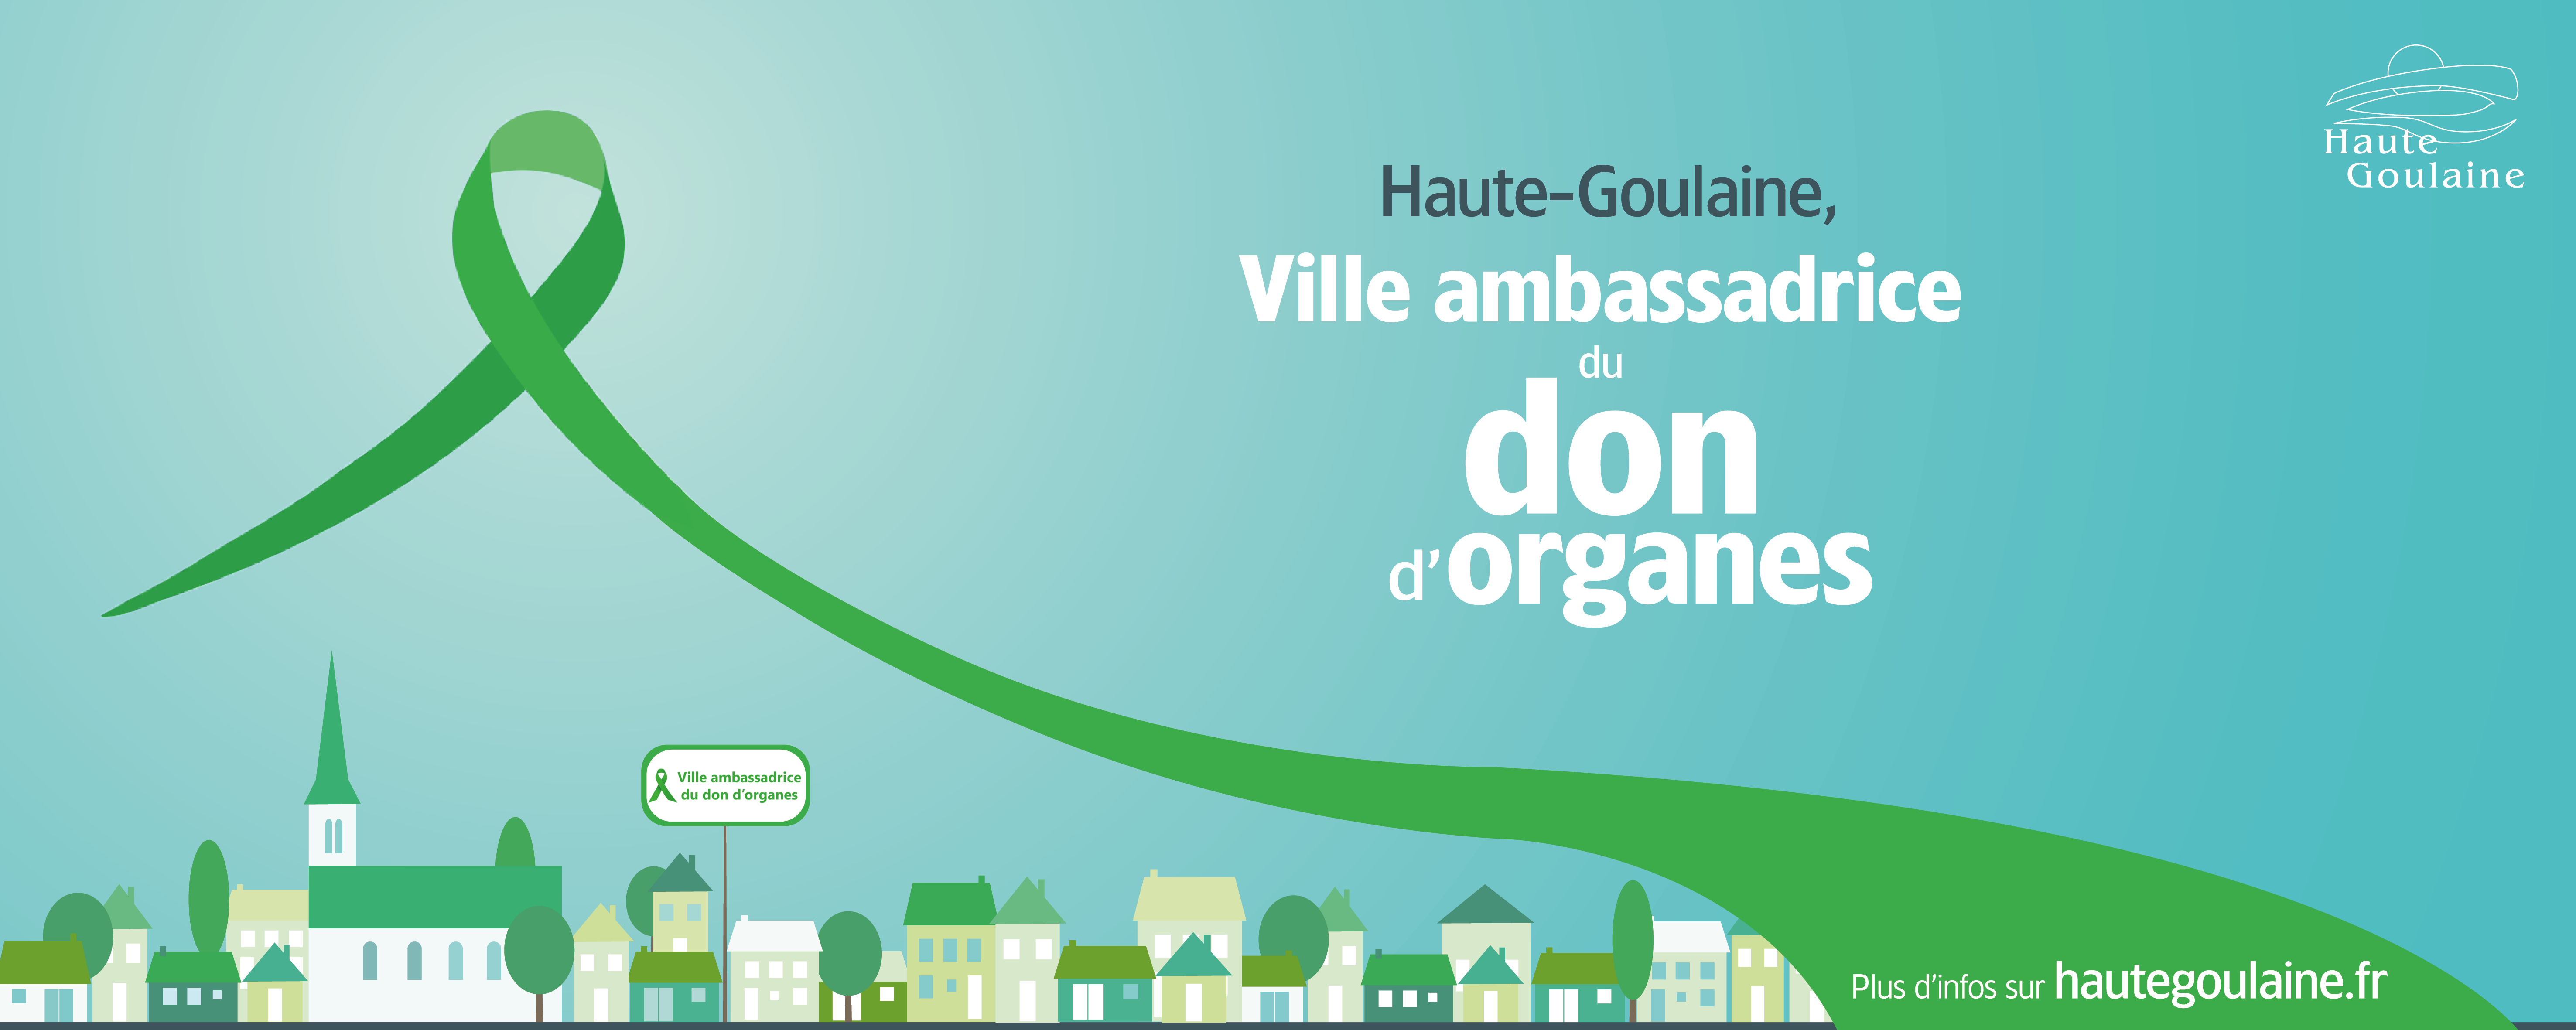 Haute-Goulaine, ville ambassadrice du don d'organes